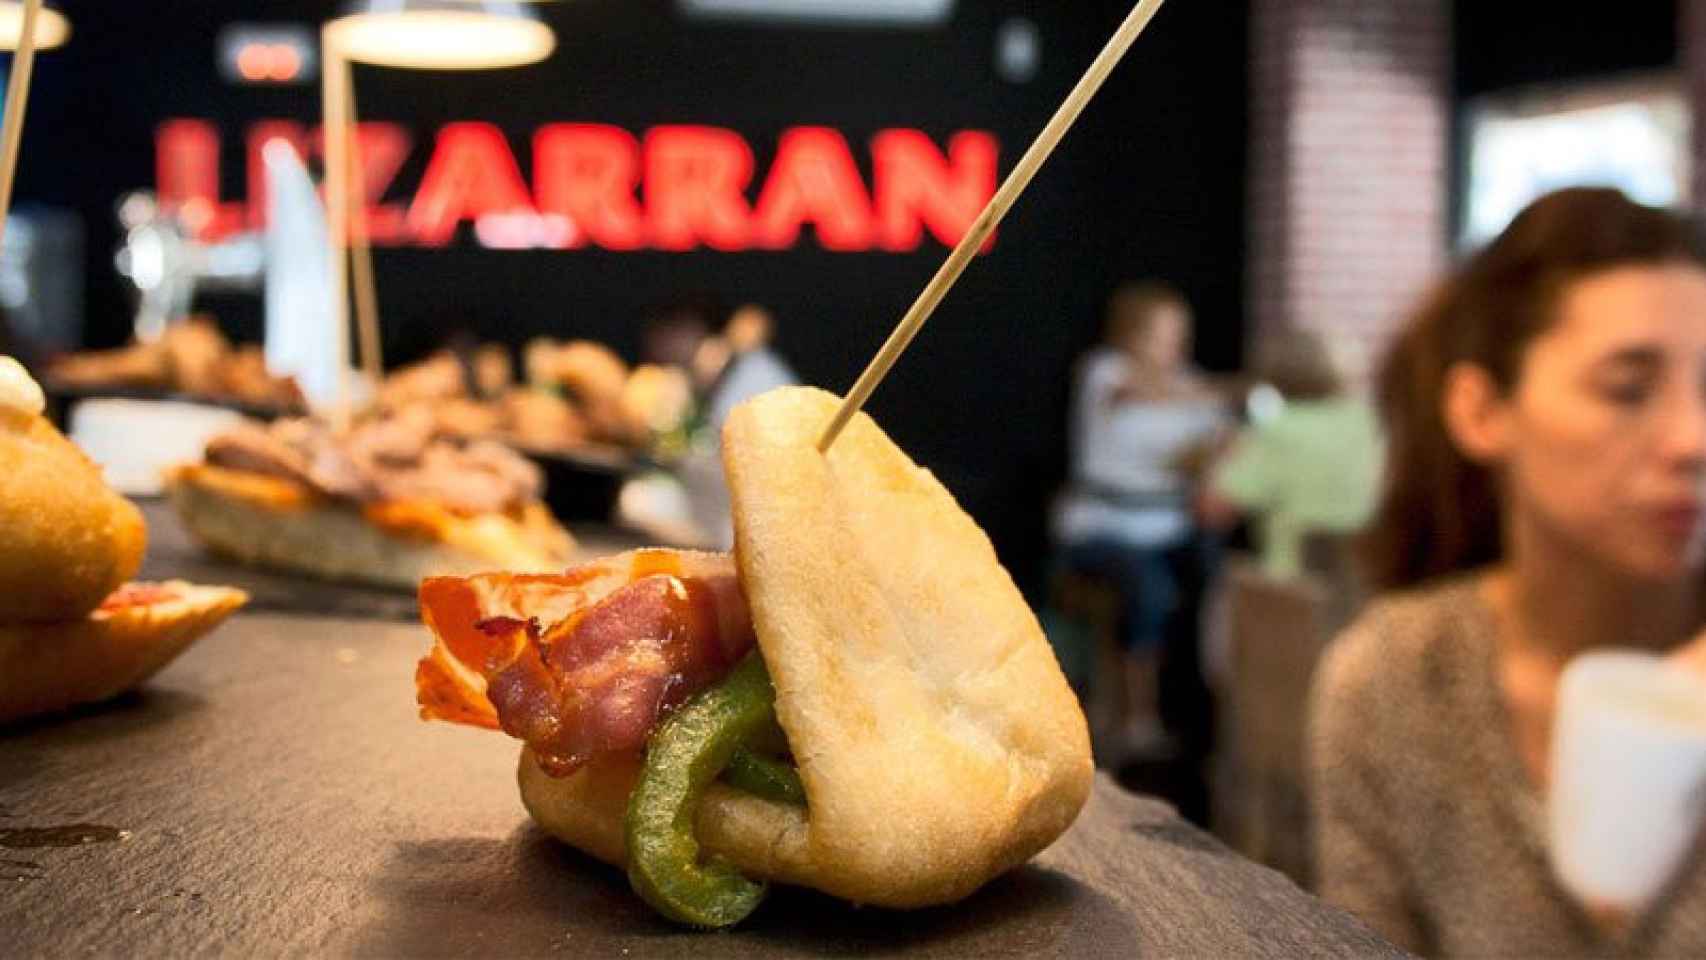 Lizarran es una de las franquicias más reconocidas en España.